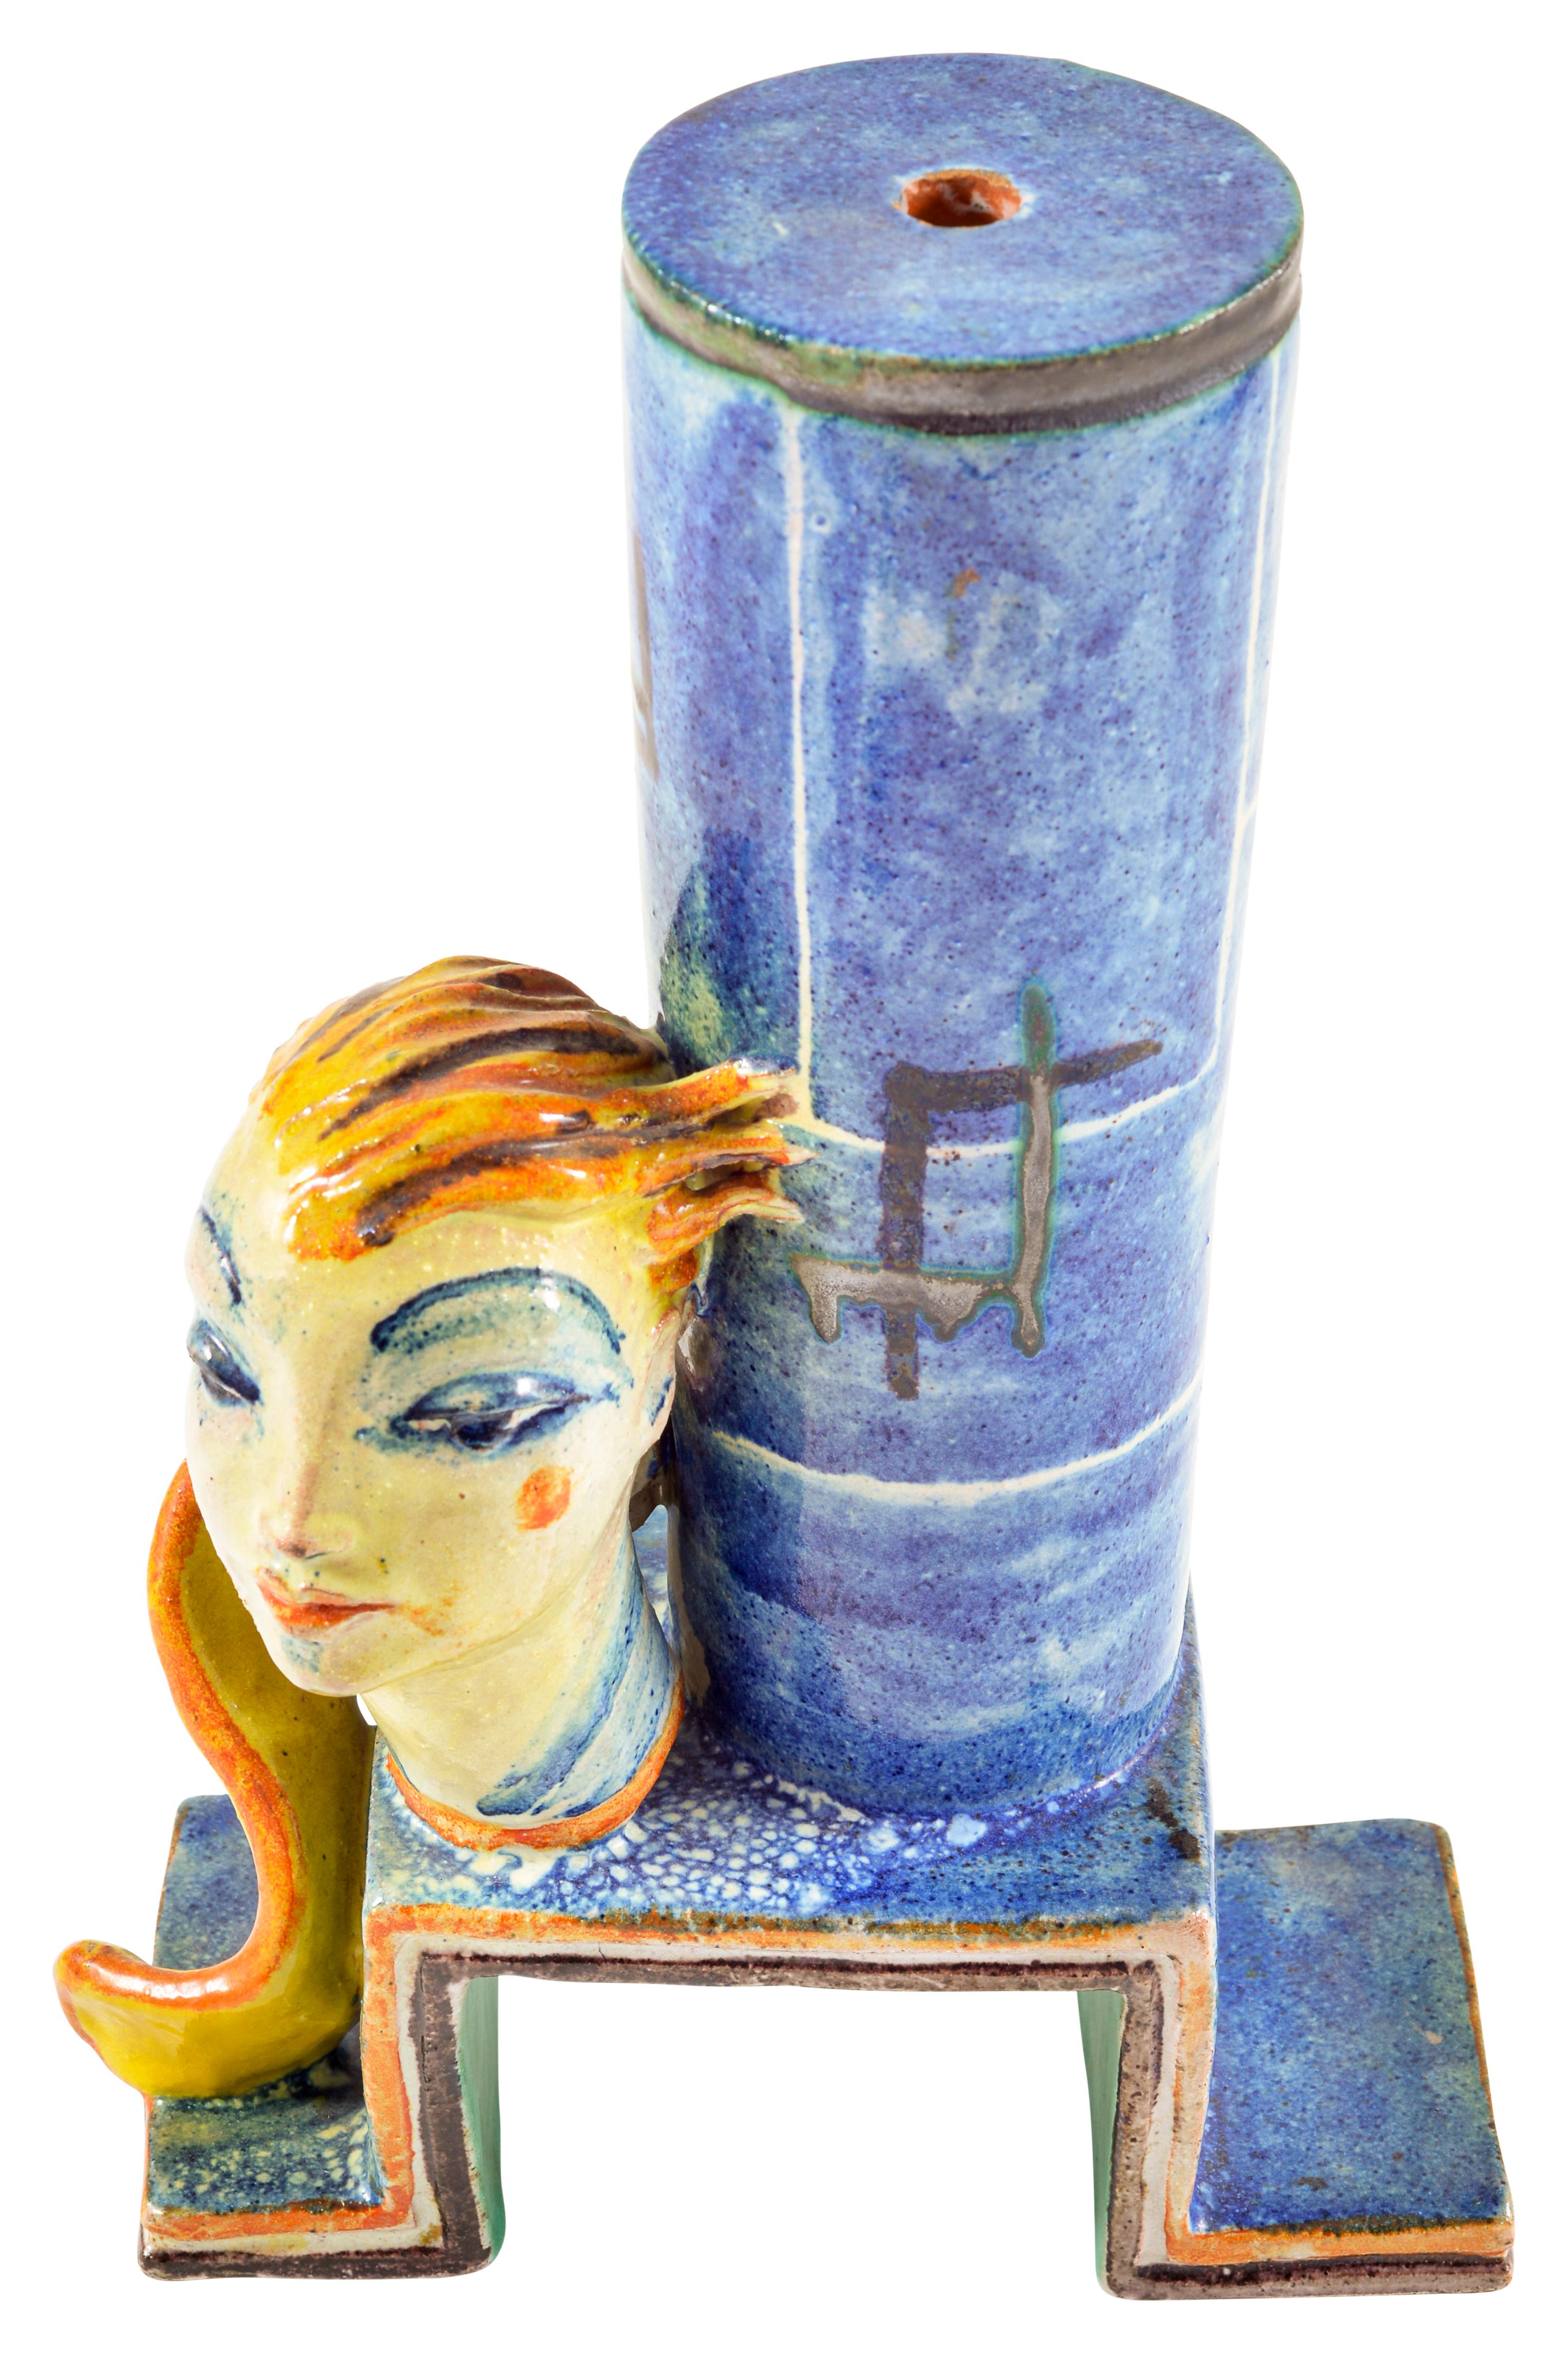 Keramischer Lampenständer mit ausdrucksvollem Kopf, entworfen von Gudrun Baudisch, ausgeführt von der Wiener Werkstatte ca. 1928 markiert Austrian Art

In diesem Keramikobjekt kombiniert Gudrun Baudisch ihre charakteristischen Kopfdarstellungen